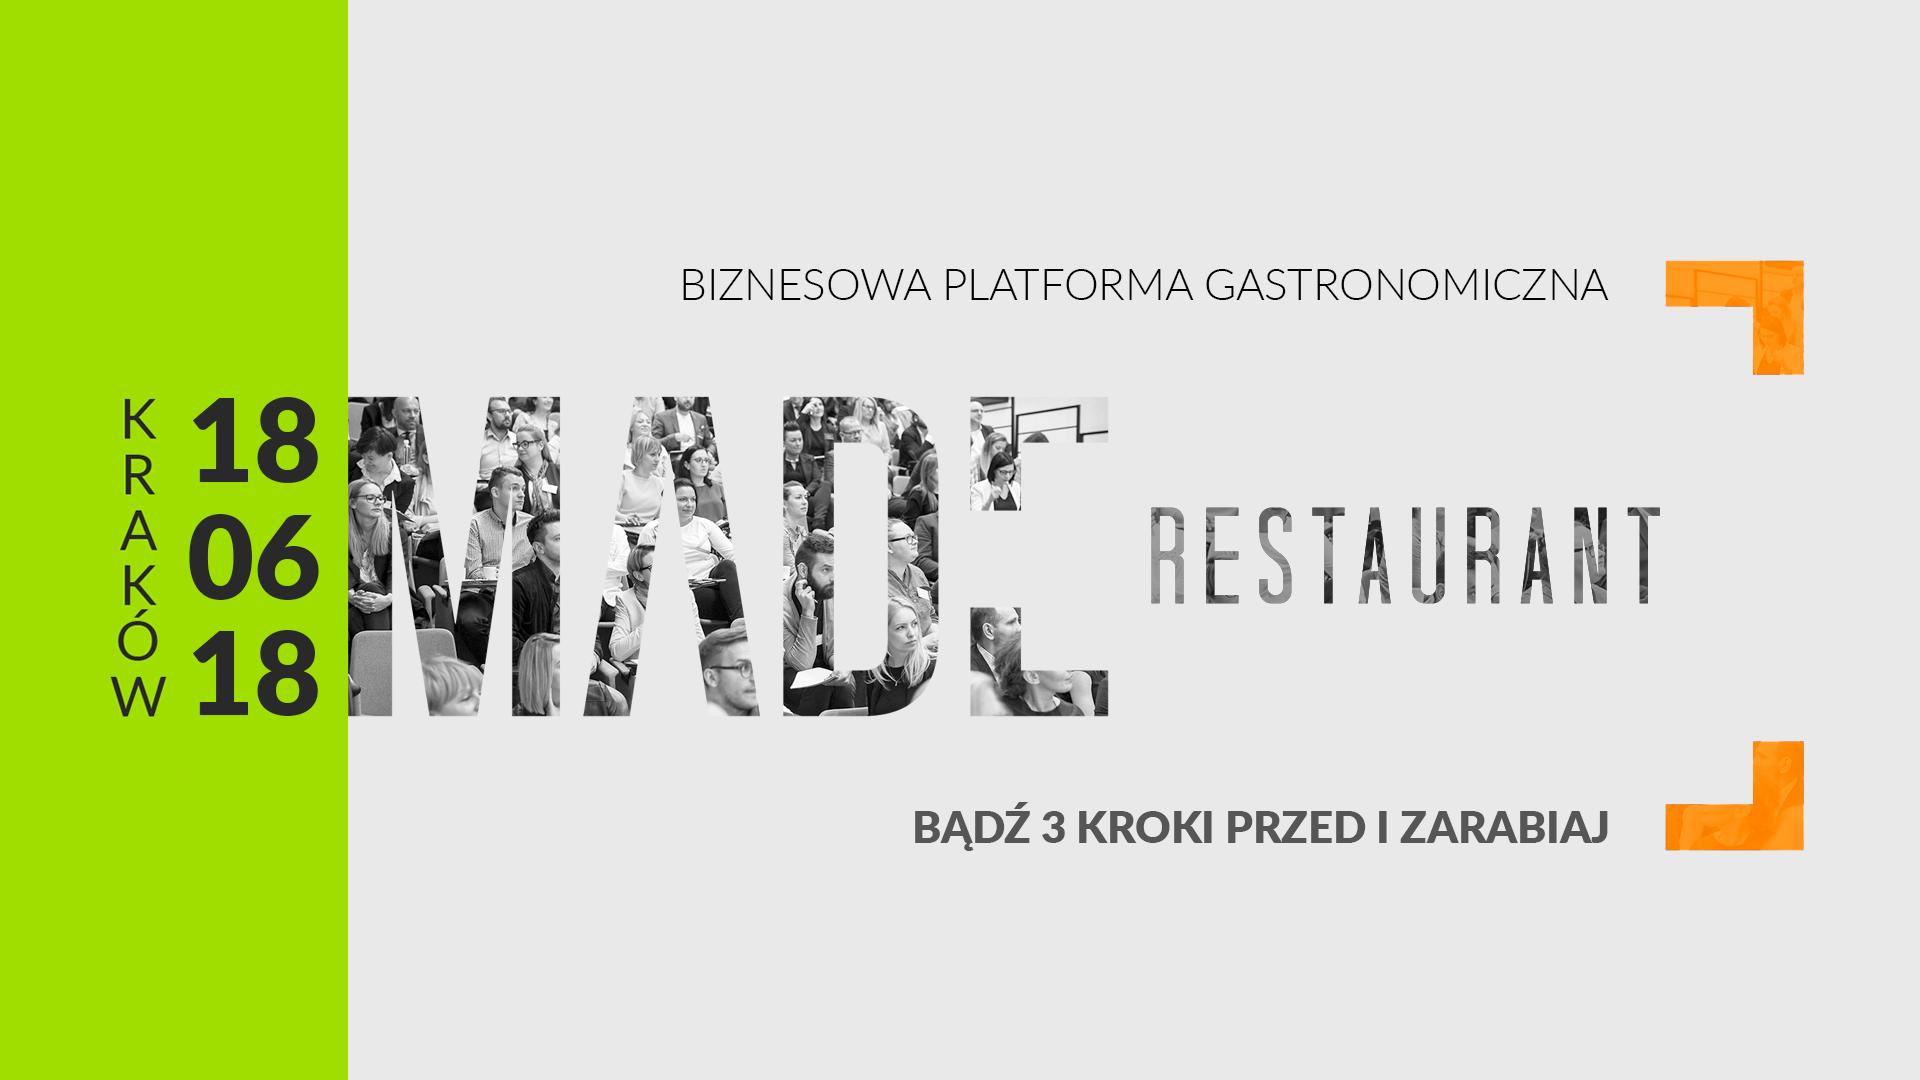 Bądź 3 Kroki Przed i Zarabiaj – Made Restaurant w Krakowie